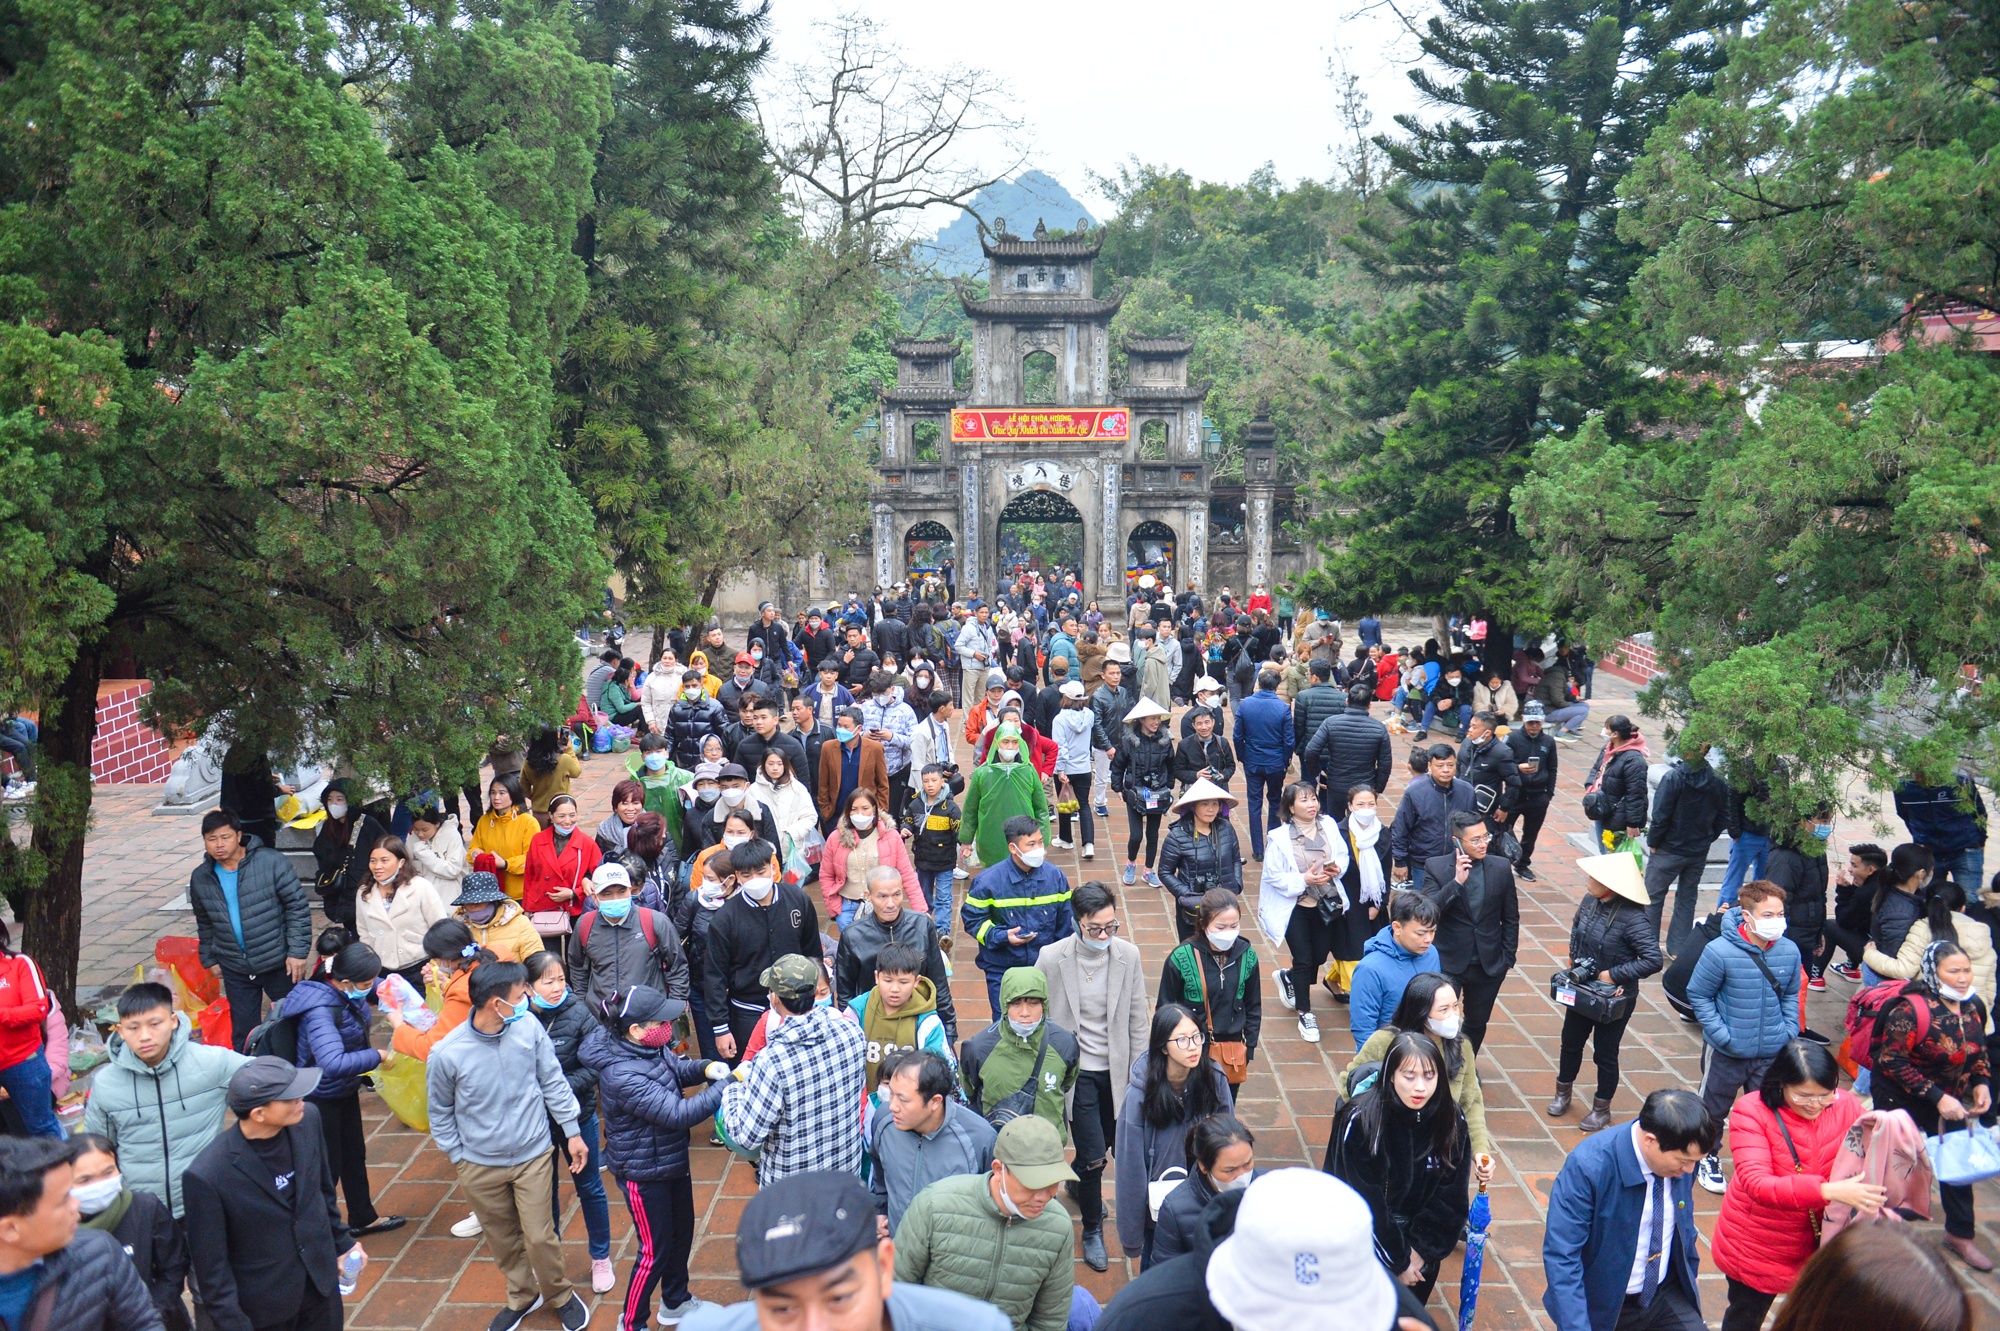 Hàng vạn người đổ về chùa Hương trong ngày khai hội - ảnh 5